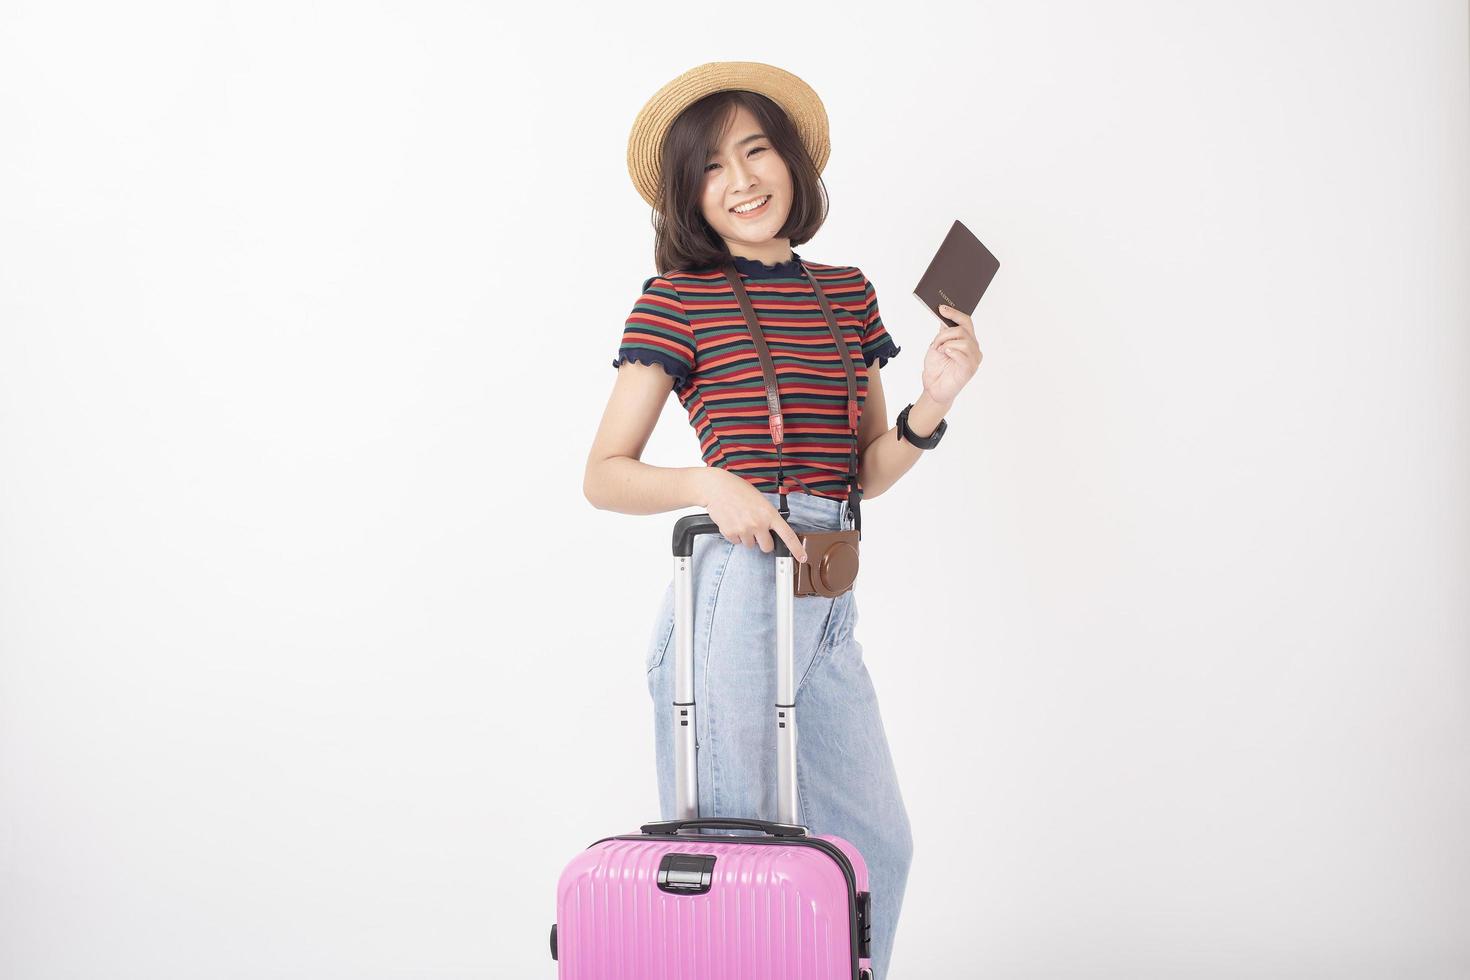 belle jeune femme de tourisme asiatique heureuse sur fond blanc studio photo